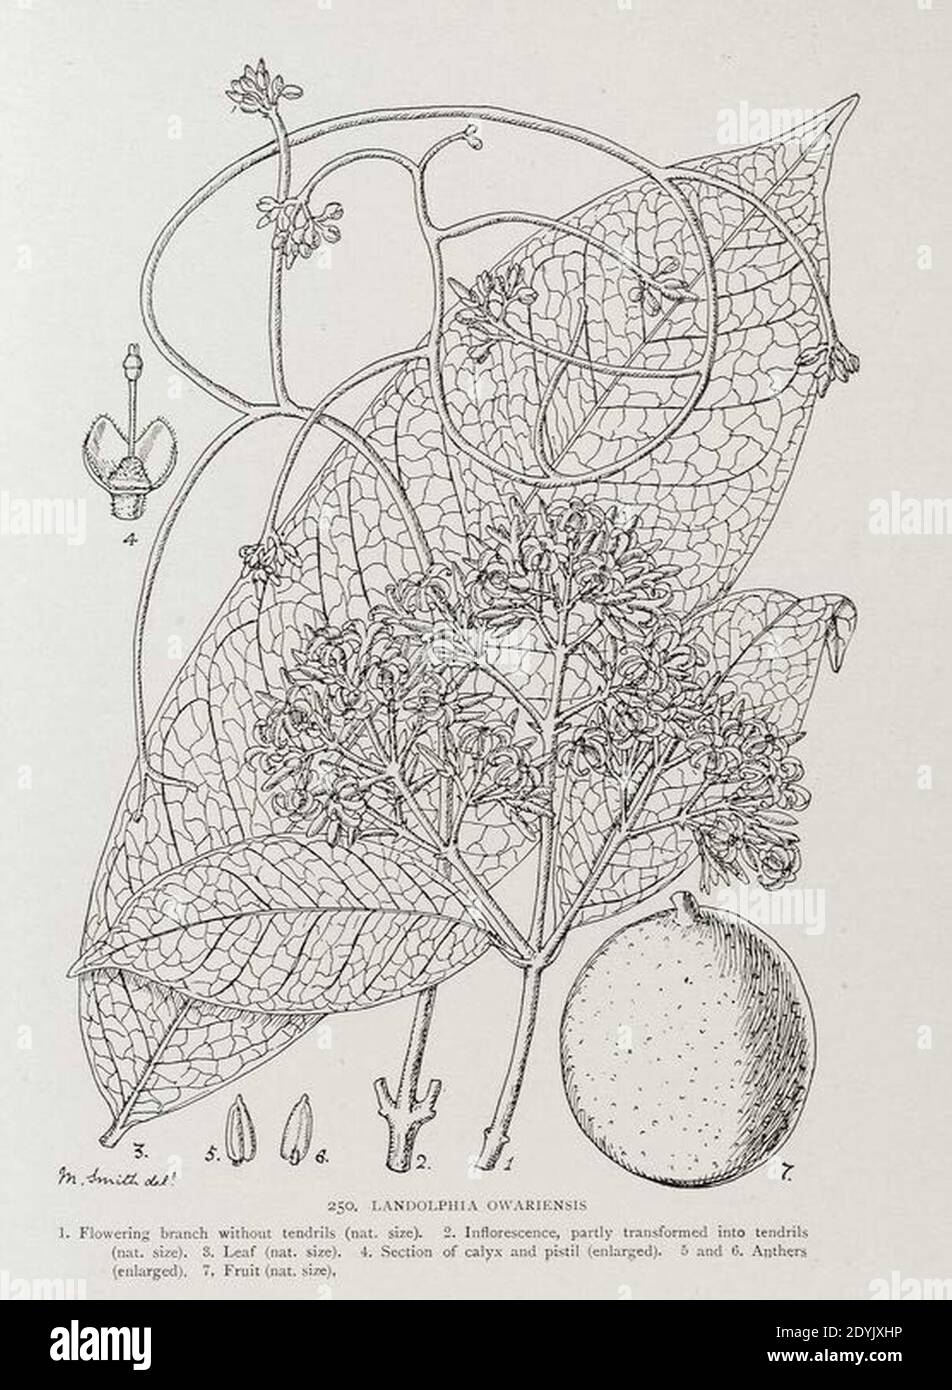 Landolphia owariensis-1906. Stock Photo